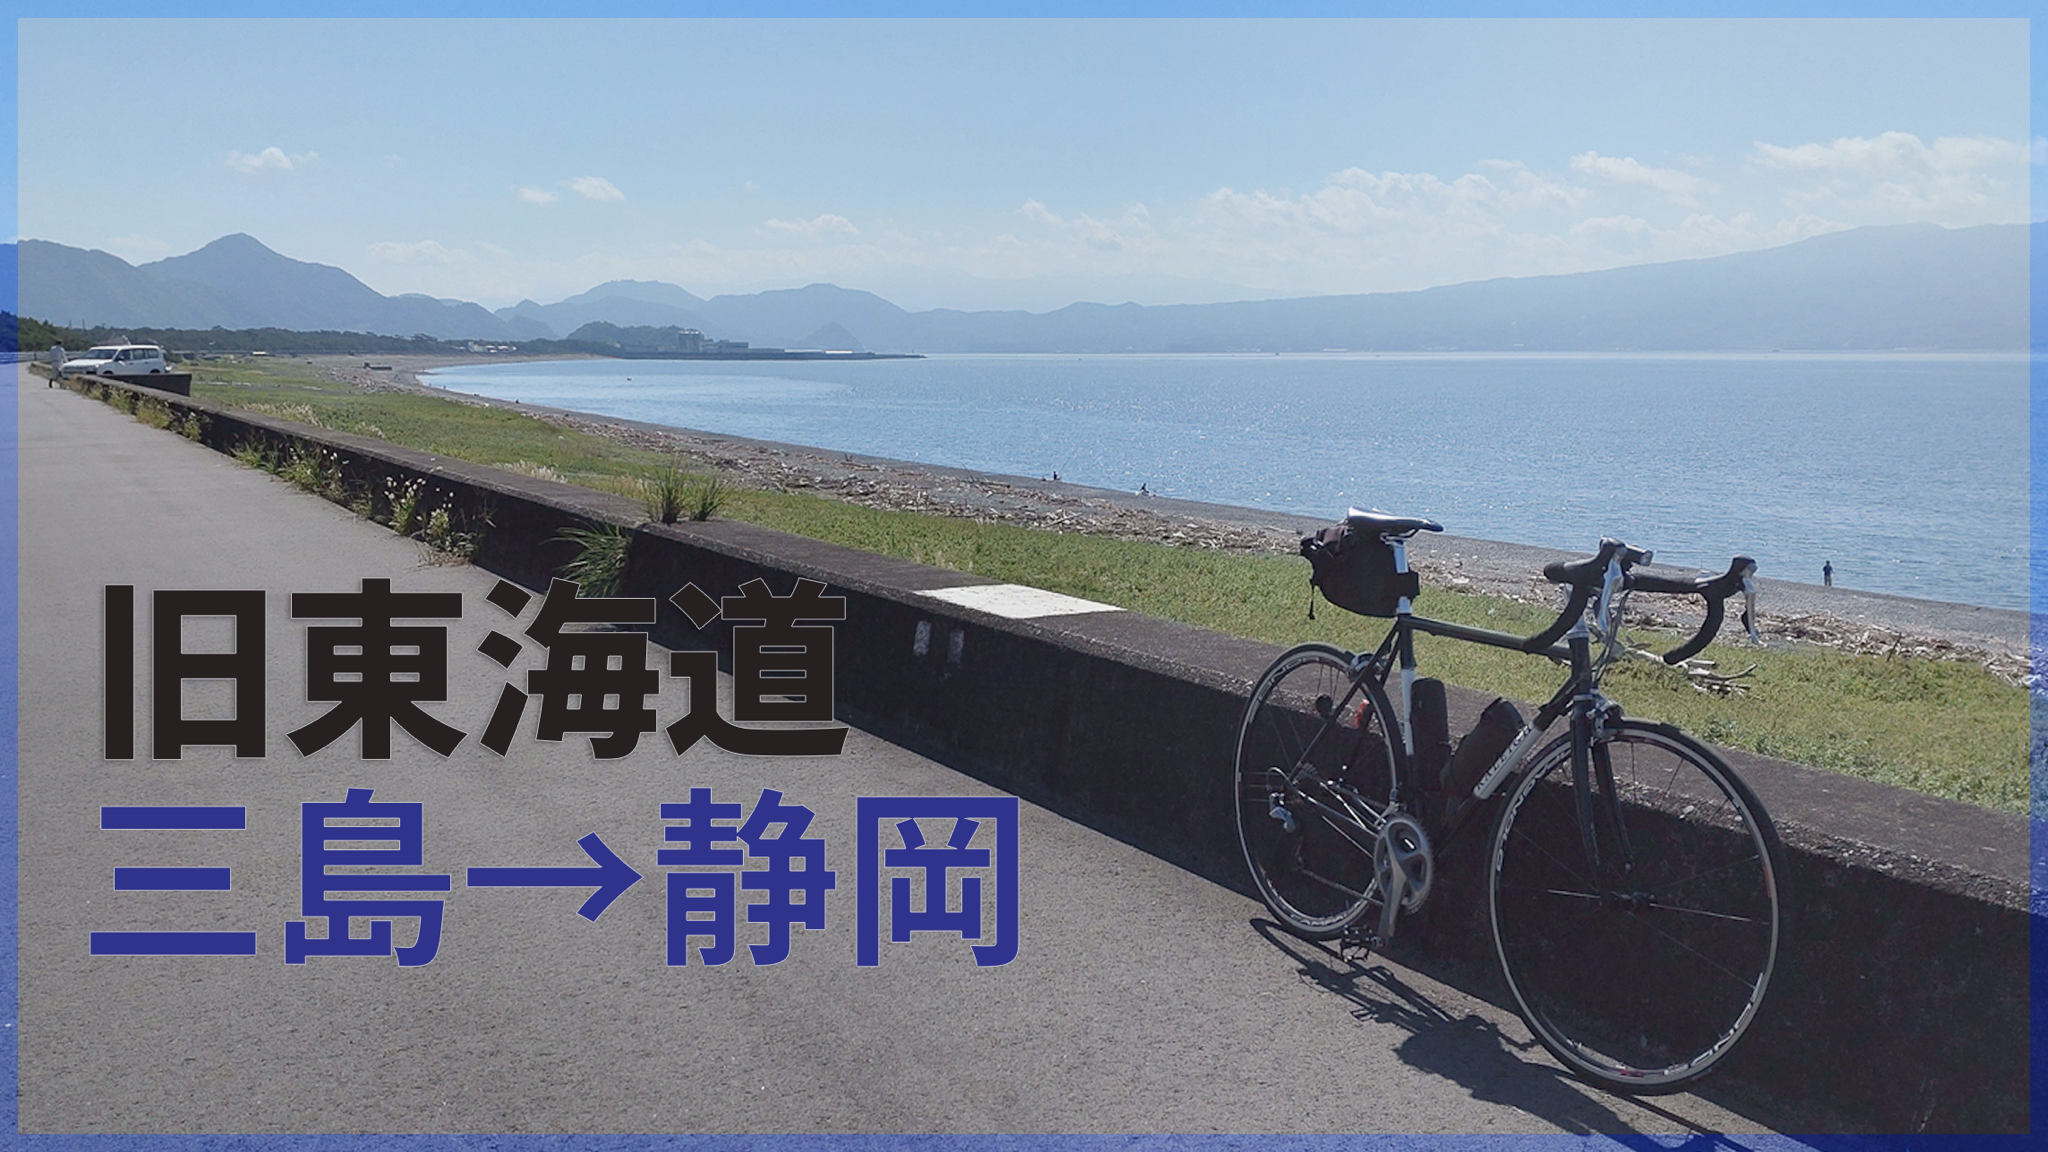 I cycled from mishima to shizuoka